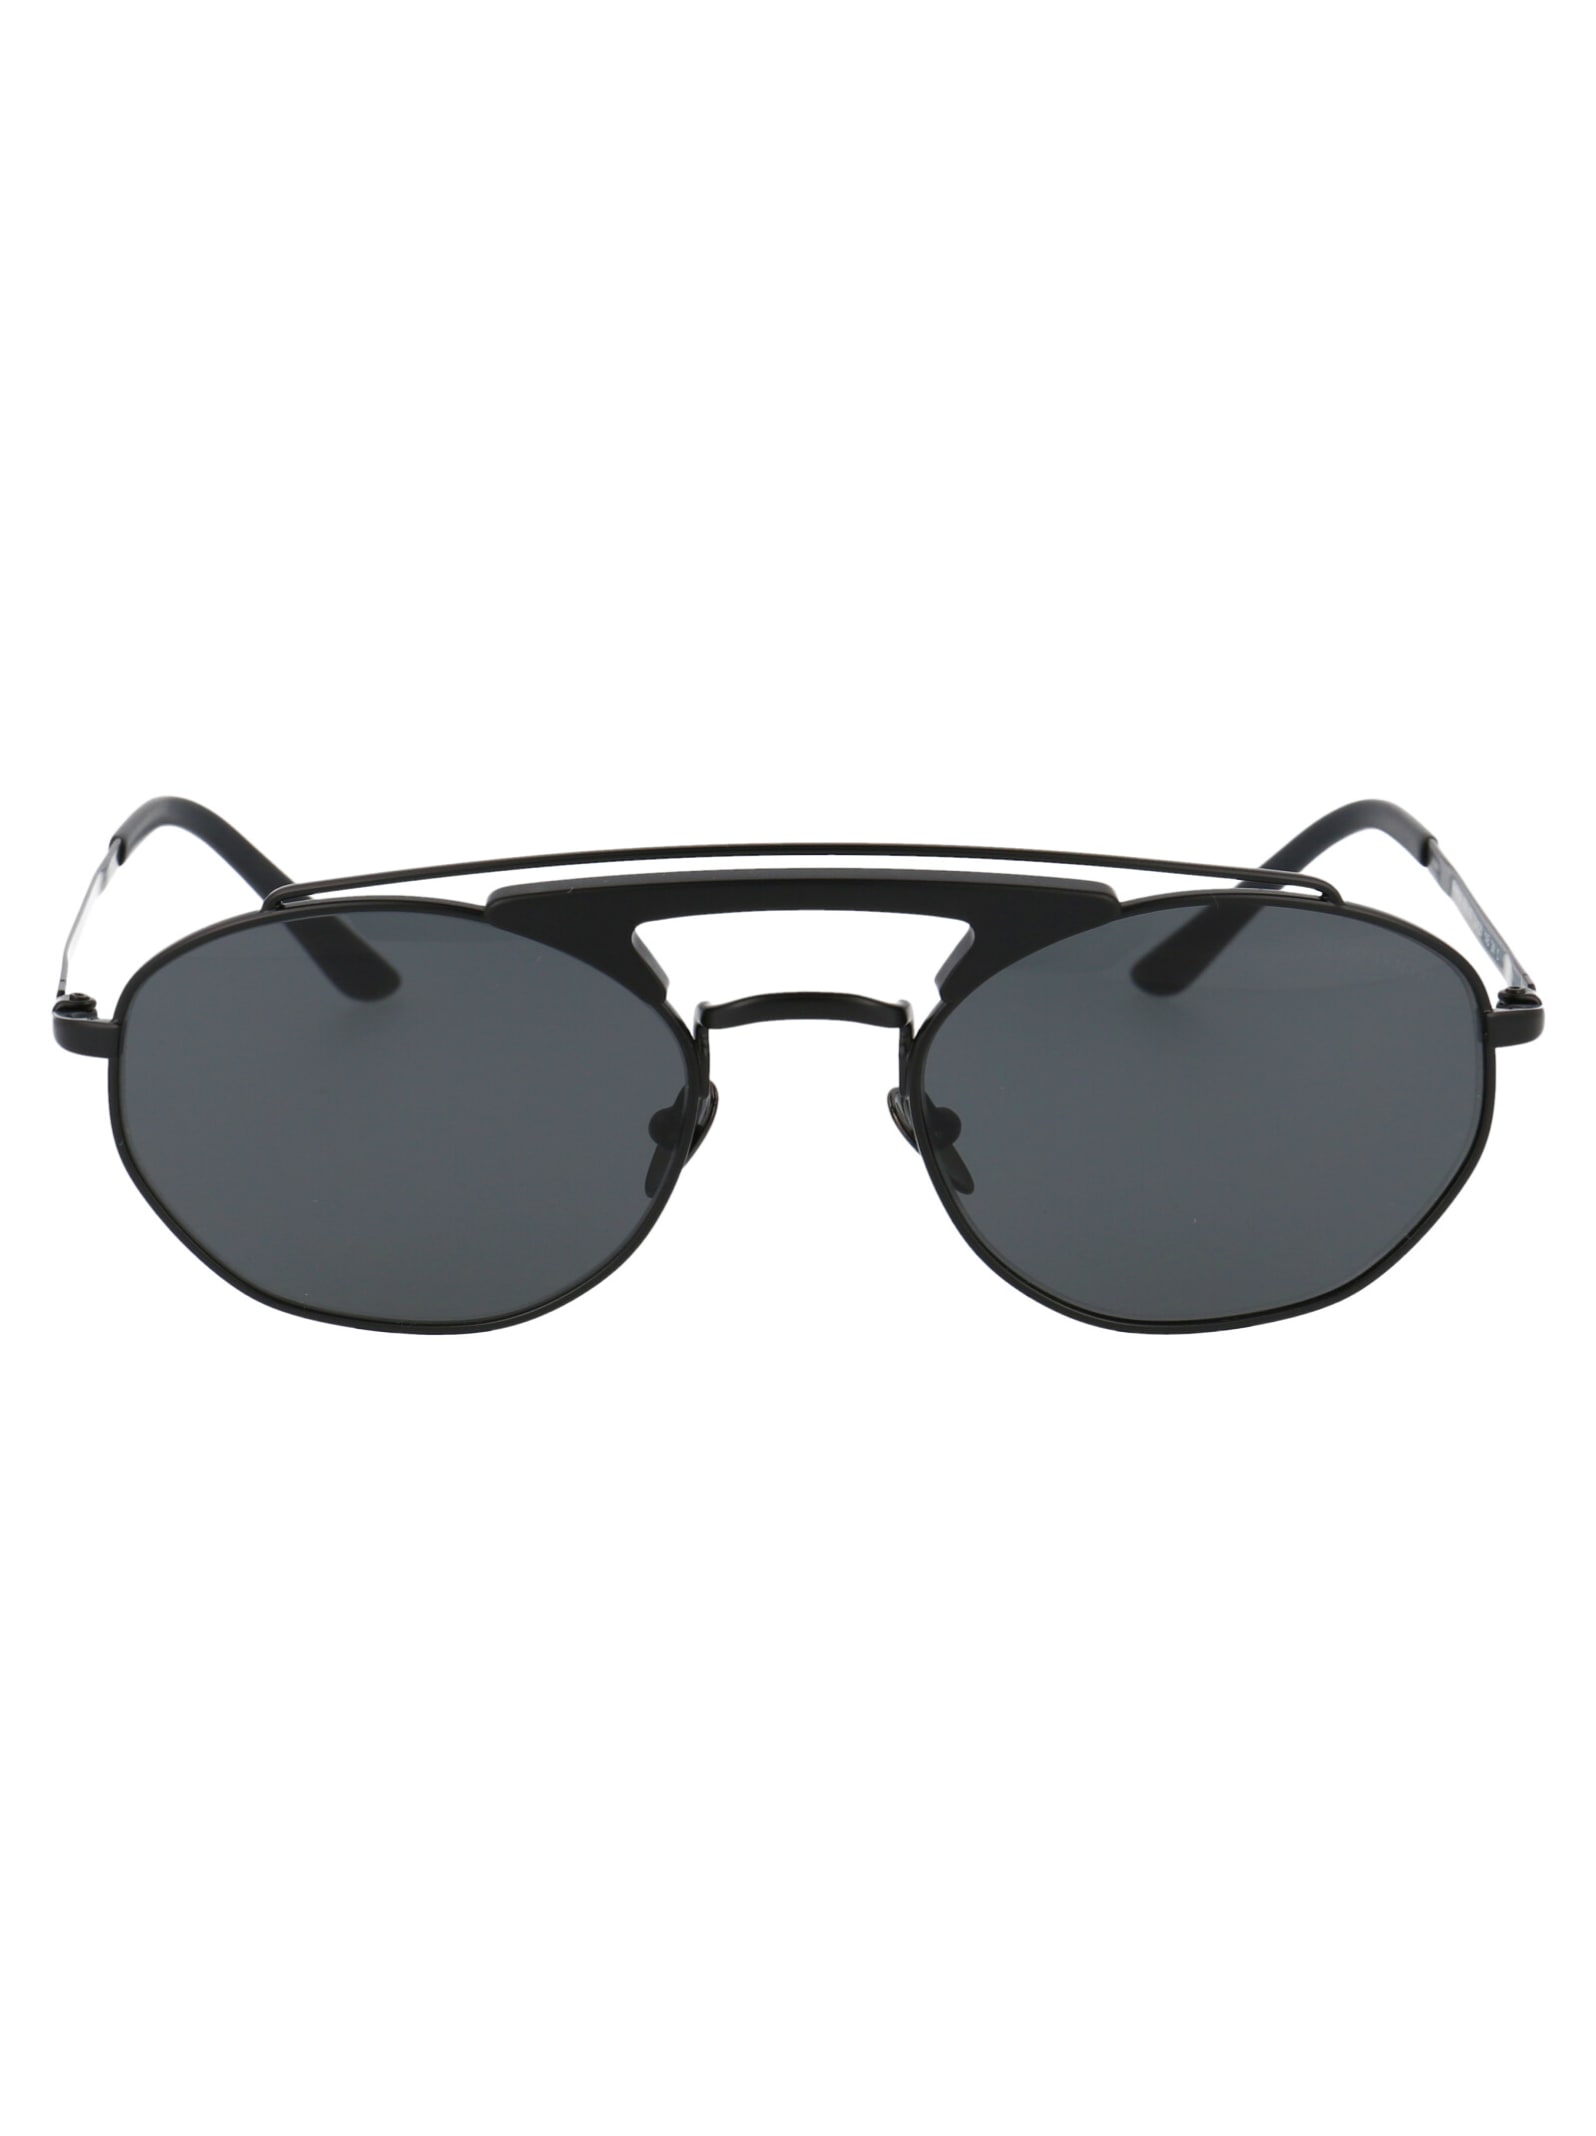 Giorgio Armani 0ar6116 Sunglasses